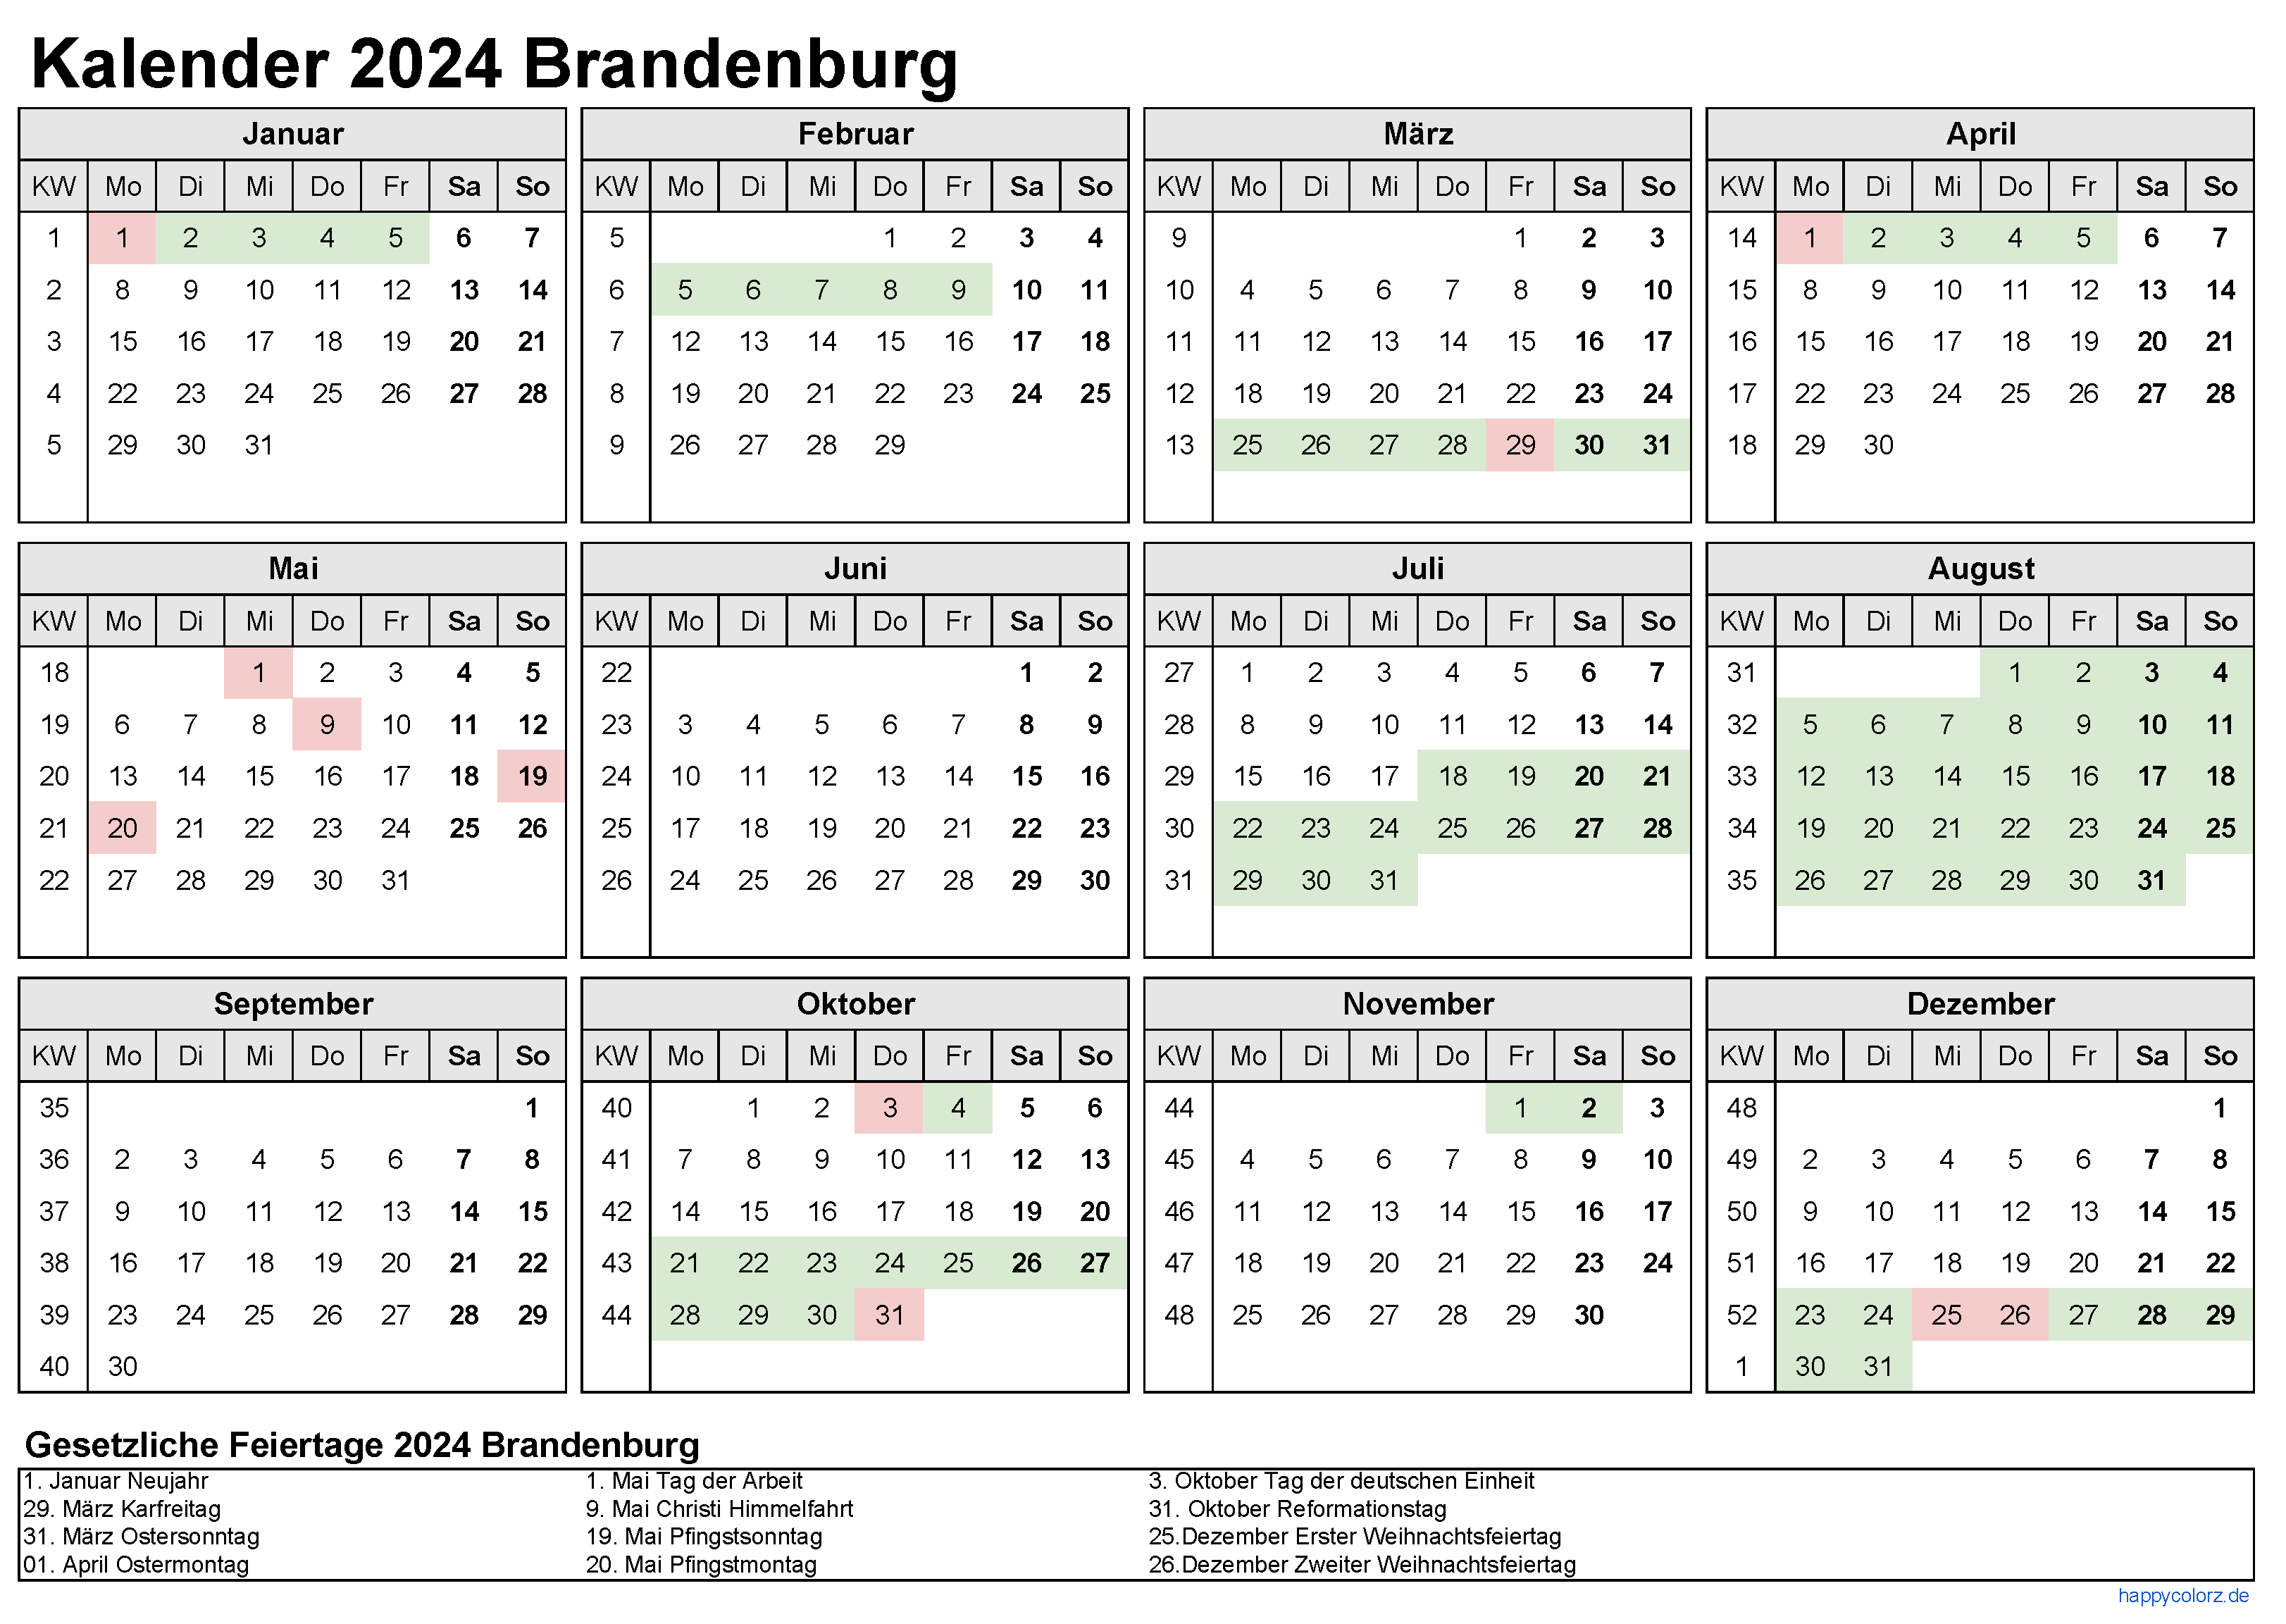 Kalender 2024 Brandenburg zum Ausdrucken